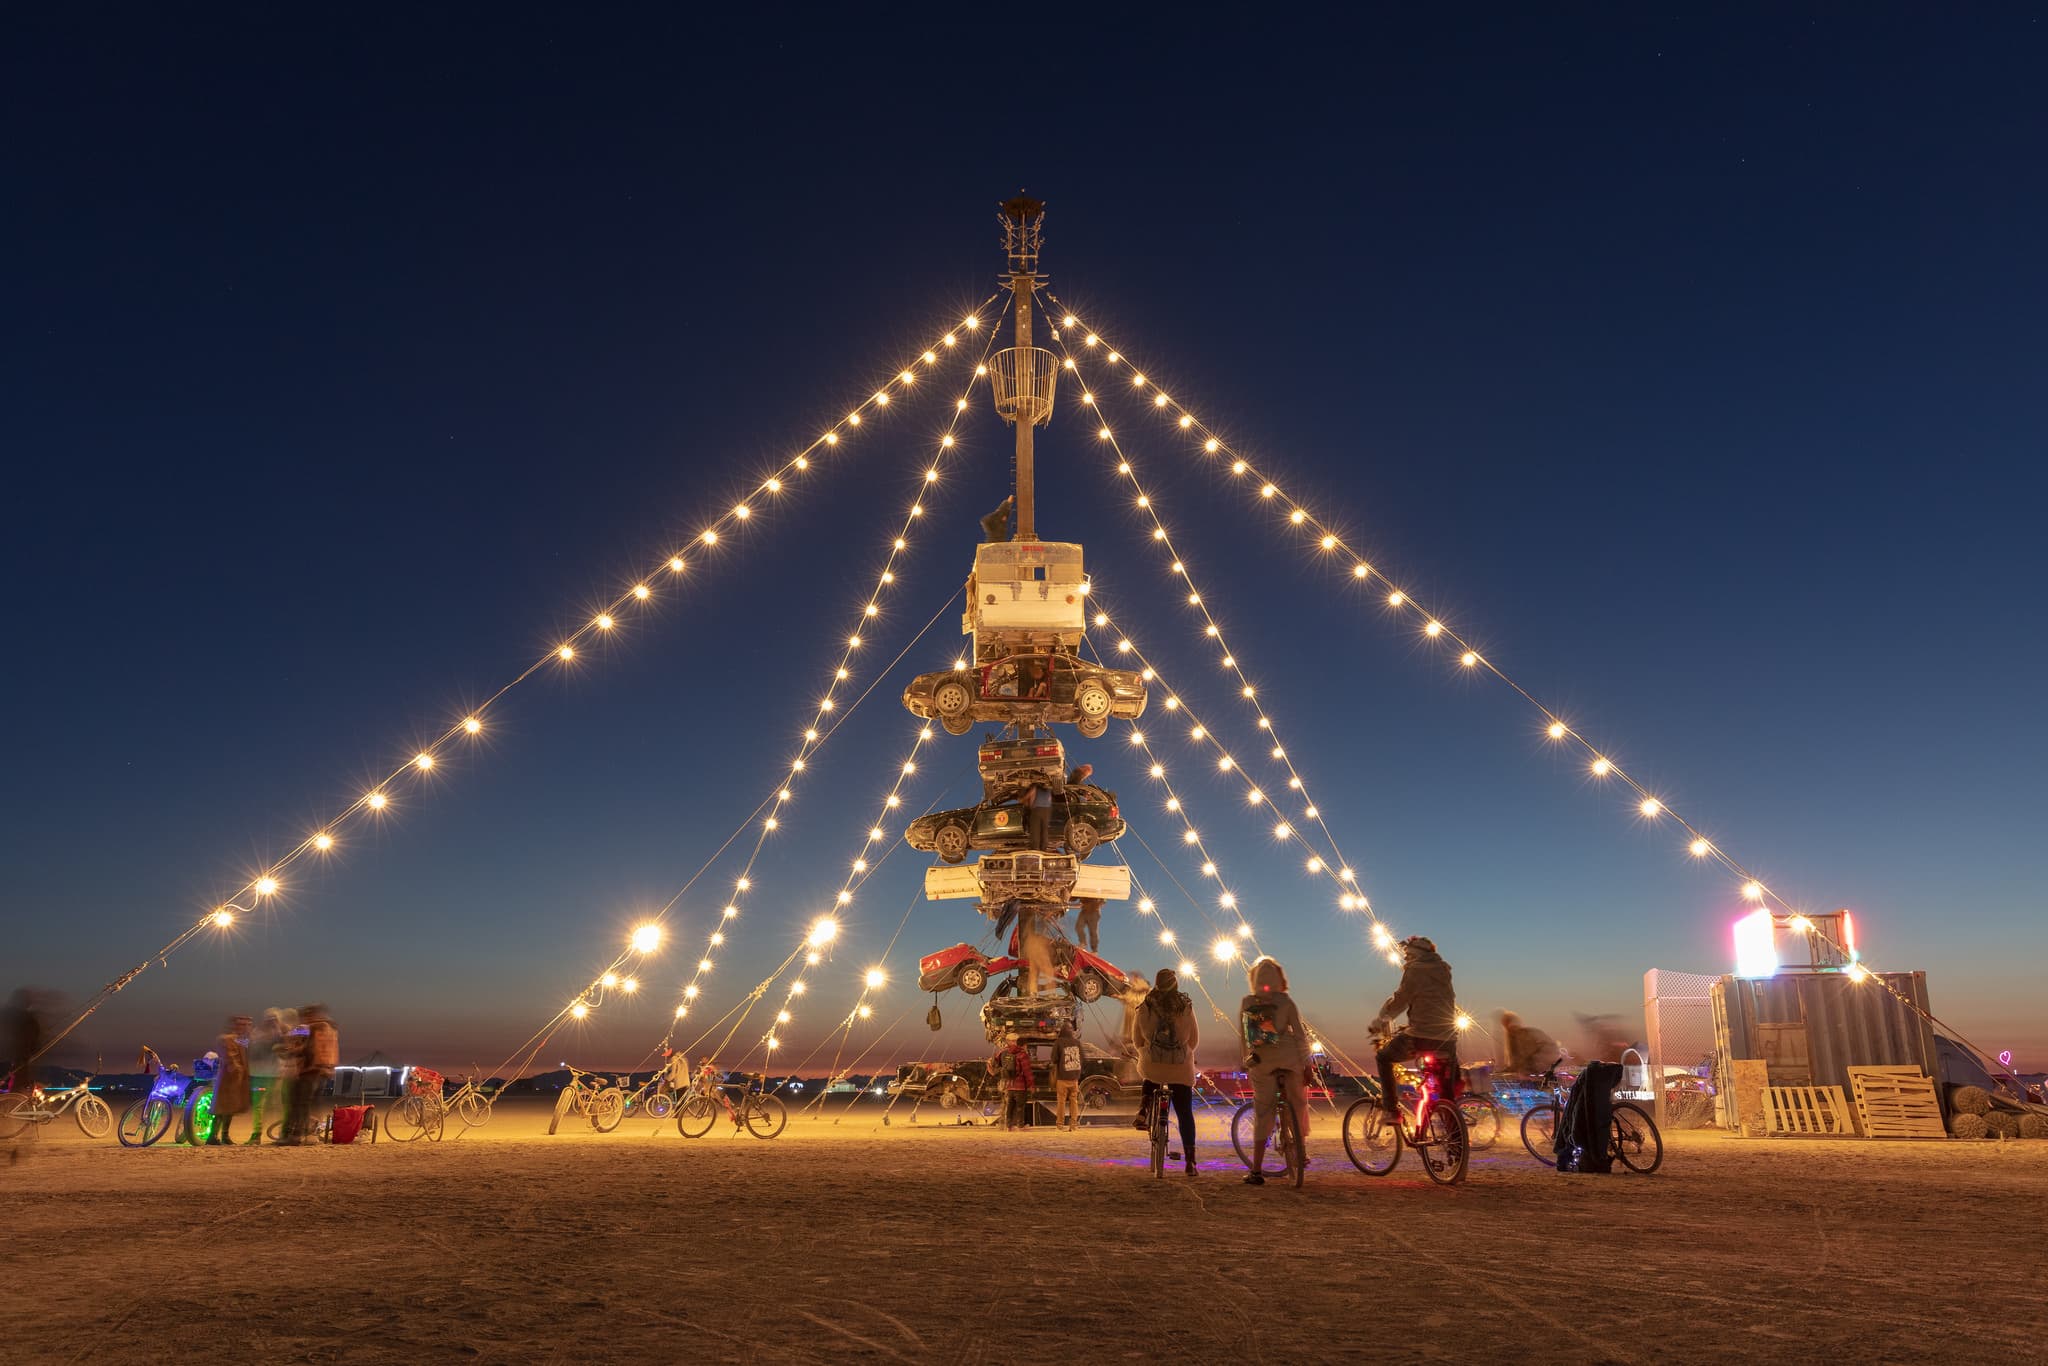 Афиша: Билеты: как попасть на Burning Man-2019? рис 8